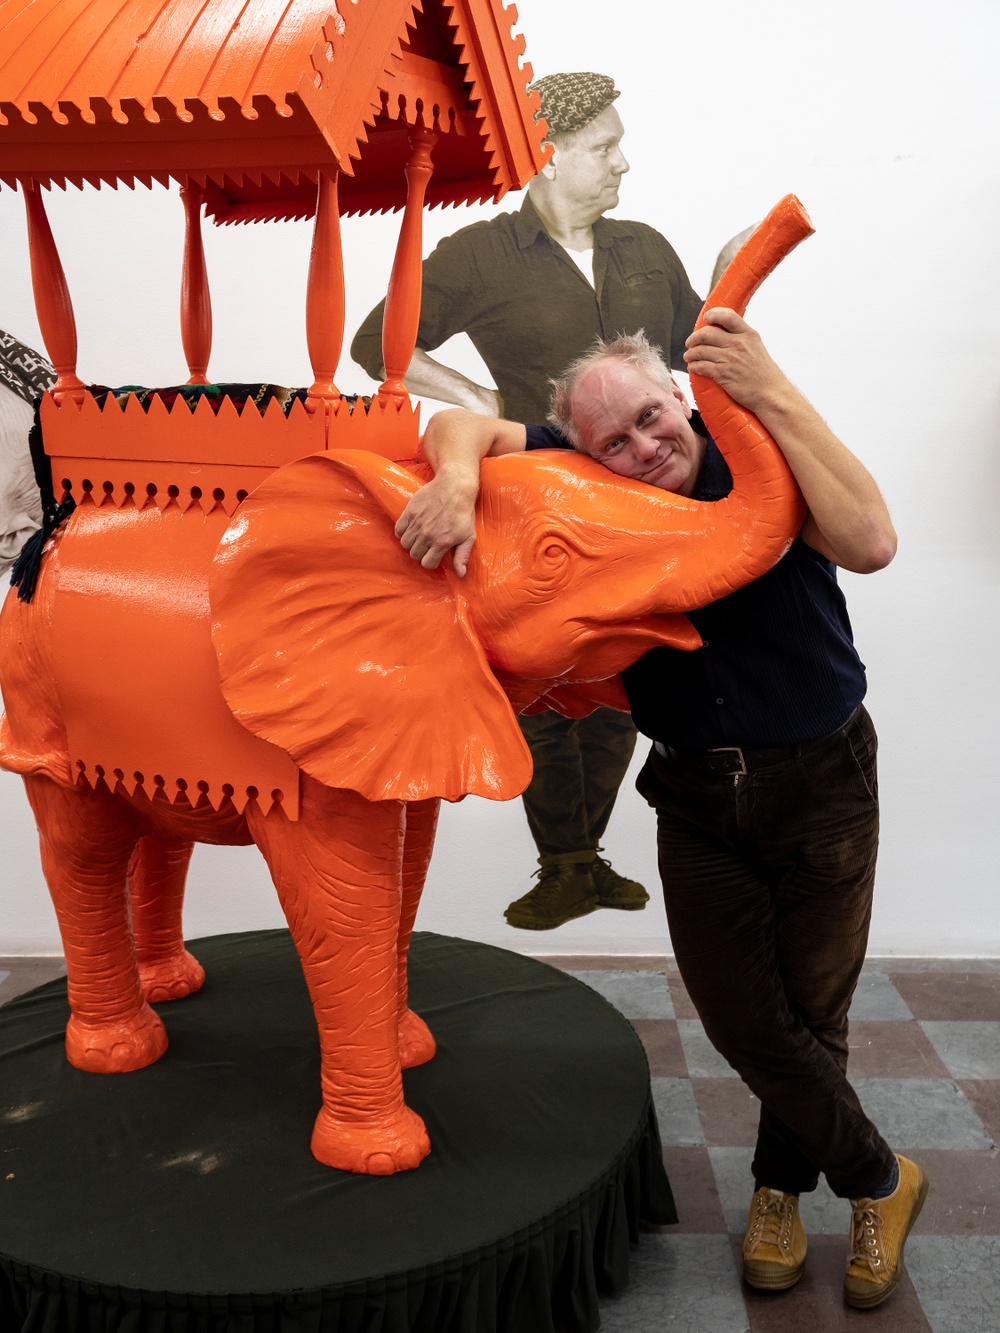 Konstnären Peter Johansson med "Elefanten i rummet" i samband med utställningen Souvenir på Wetterling Gallery i Stockholm.